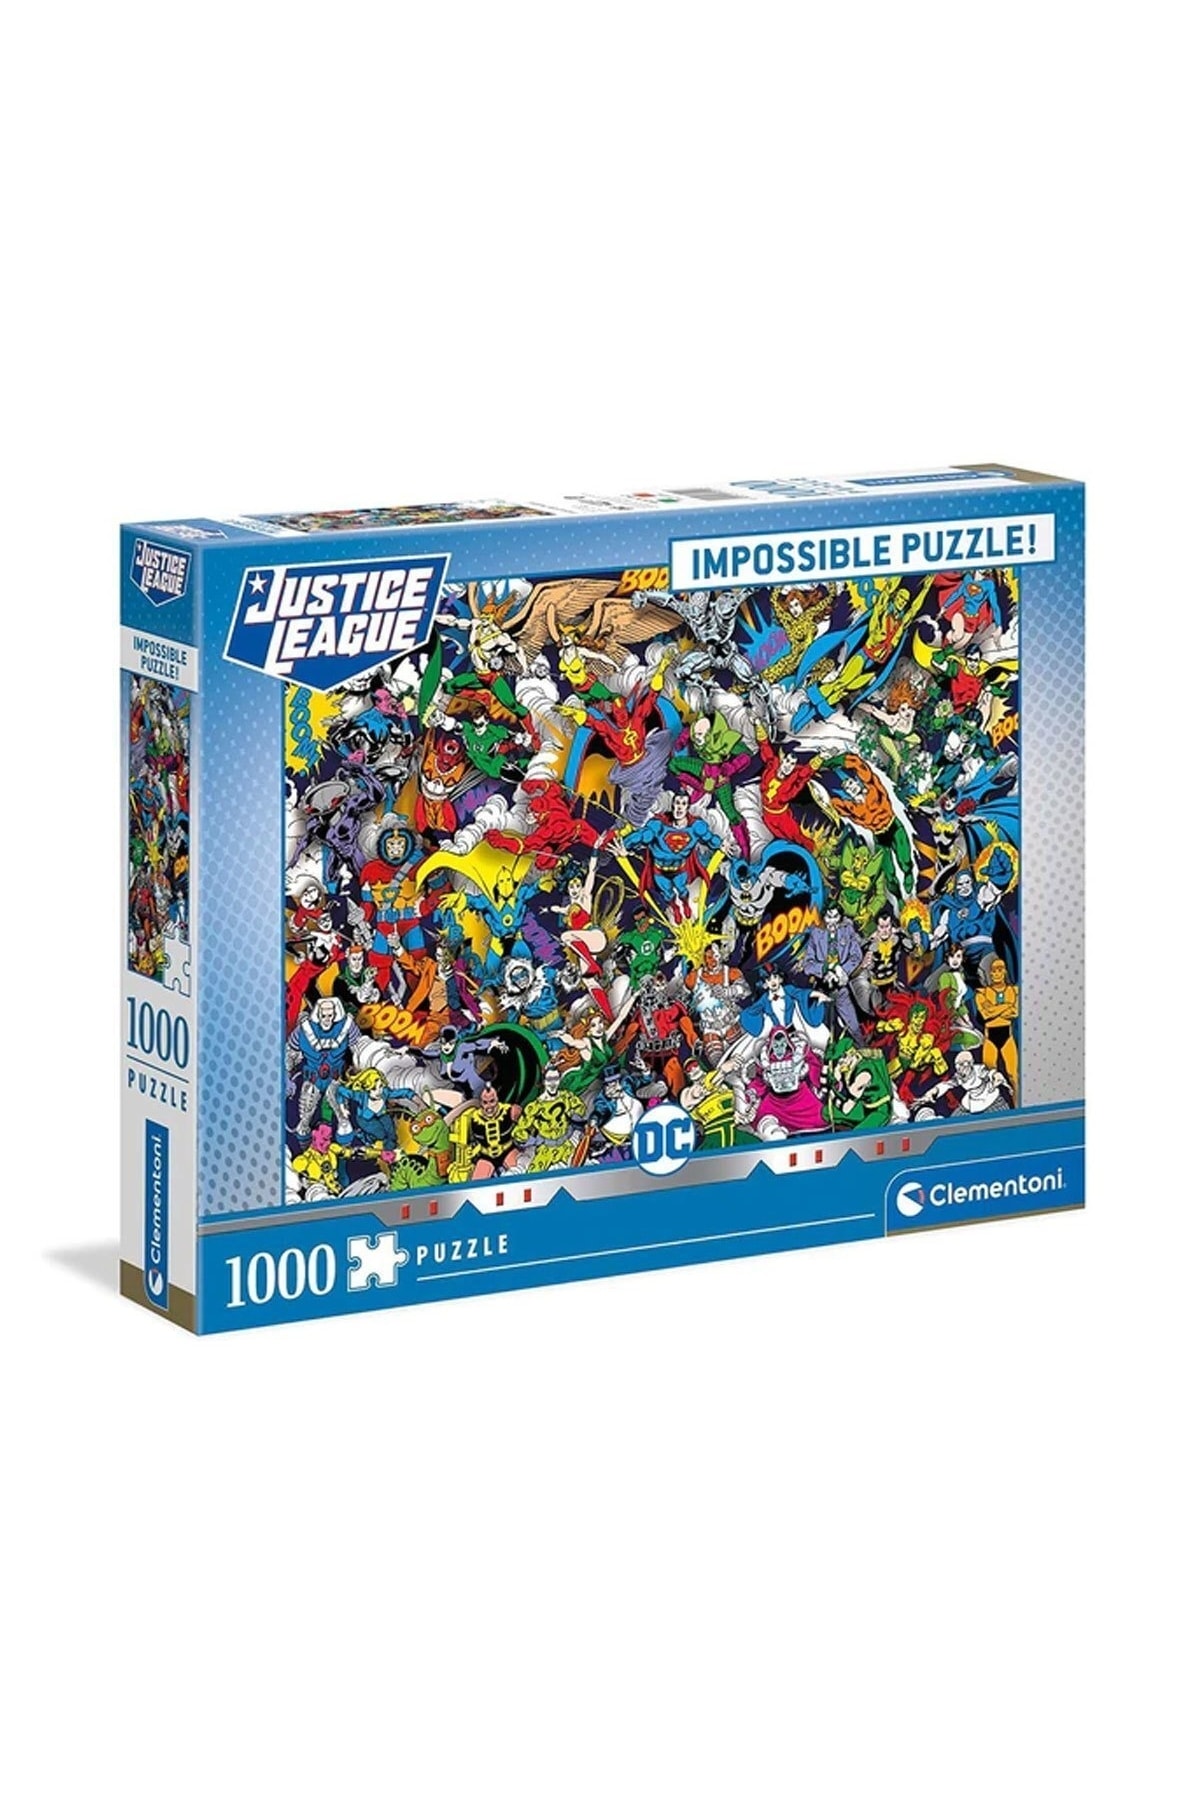 Clementoni 39599 DC Comics 1000 Teile Impossible Puzzle 